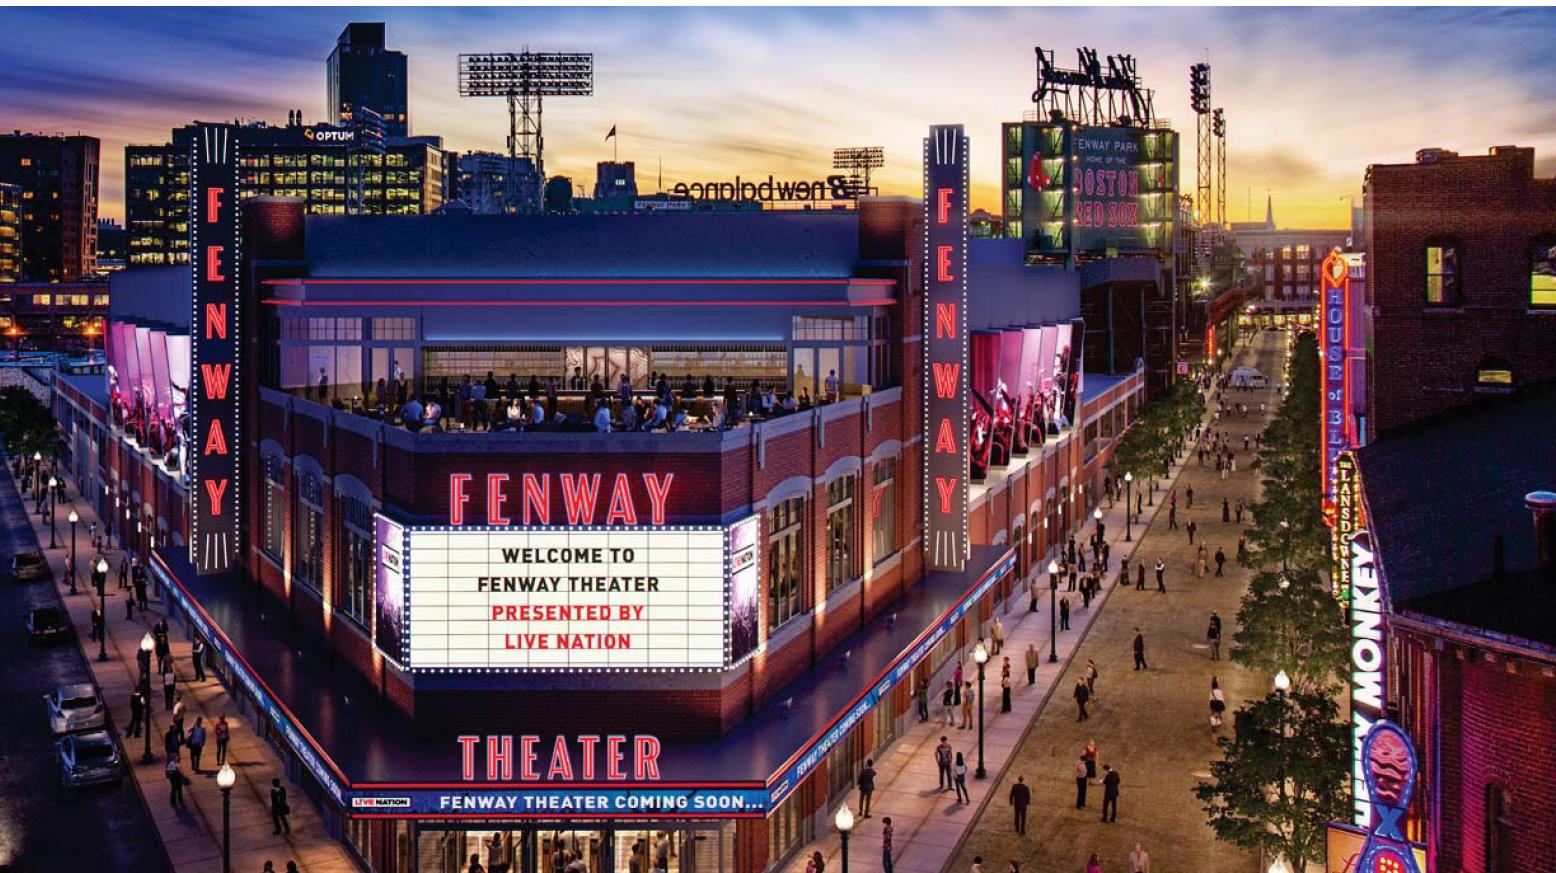 Fenway Theater rendering